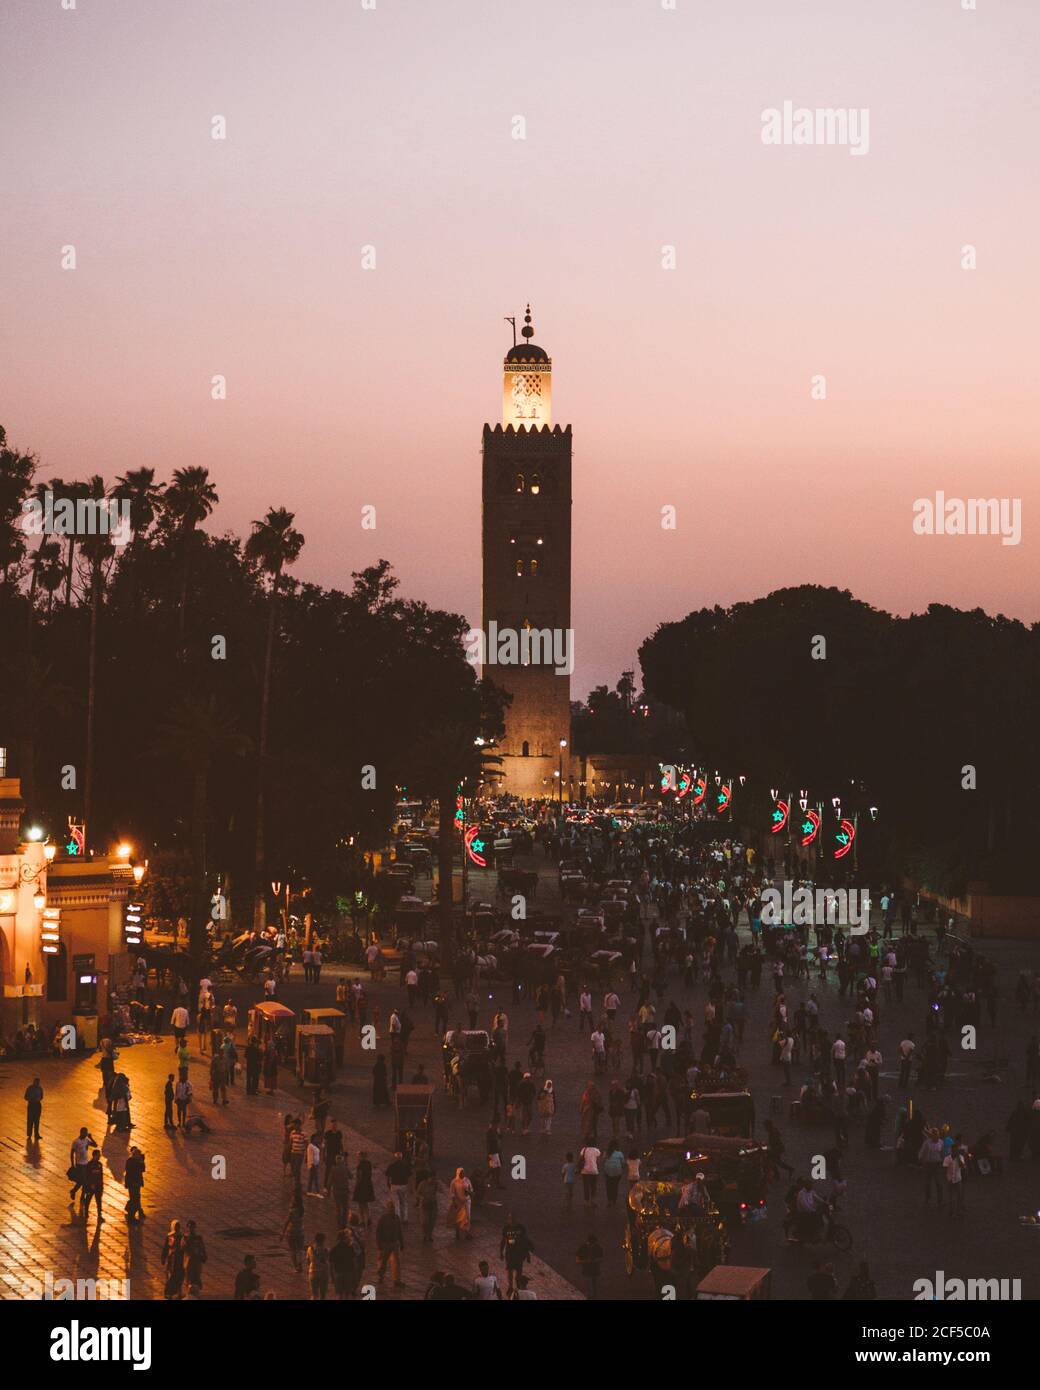 Marocco - Aprile 08 2019: Folla di persone anonime che camminano sulla piazza di fronte alla torre alta invecchiata durante il tramonto Foto Stock